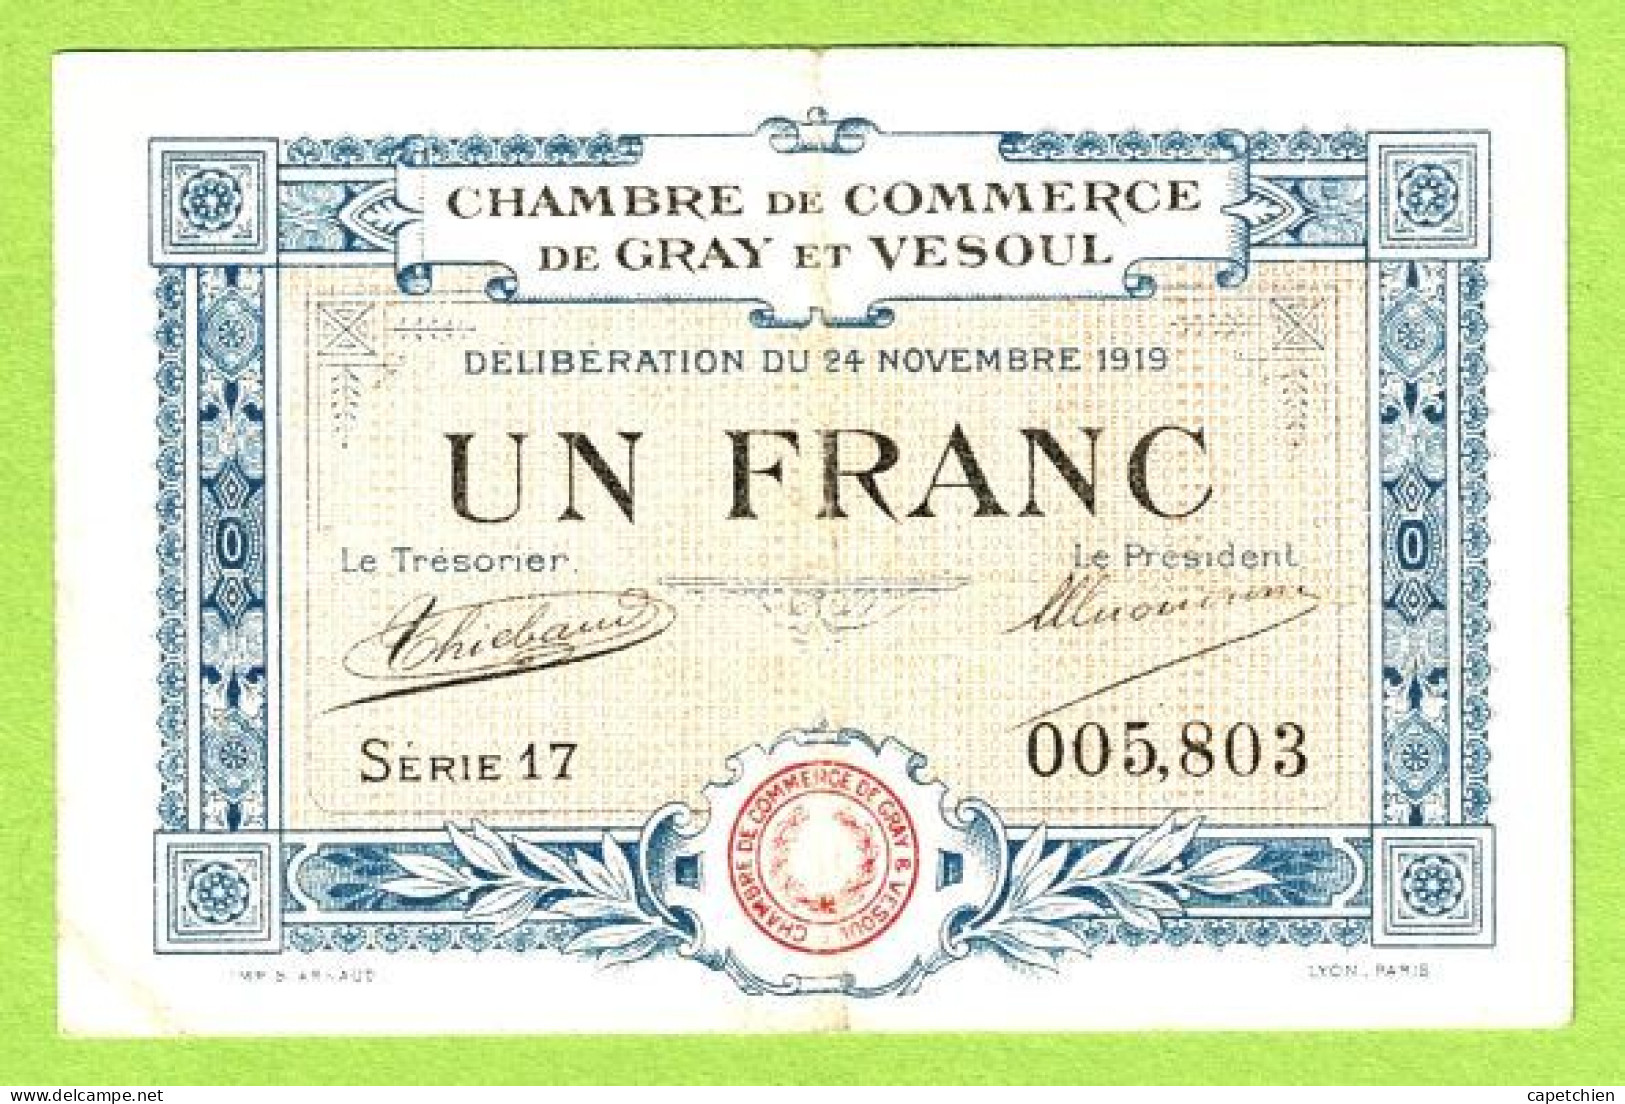 FRANCE / CHAMBRE De COMMERCE / GRAY -  VESOUL / 1 FRANC / 24 NOVEMBRE 1919 / SERIE 17 / N° 005803 - Cámara De Comercio